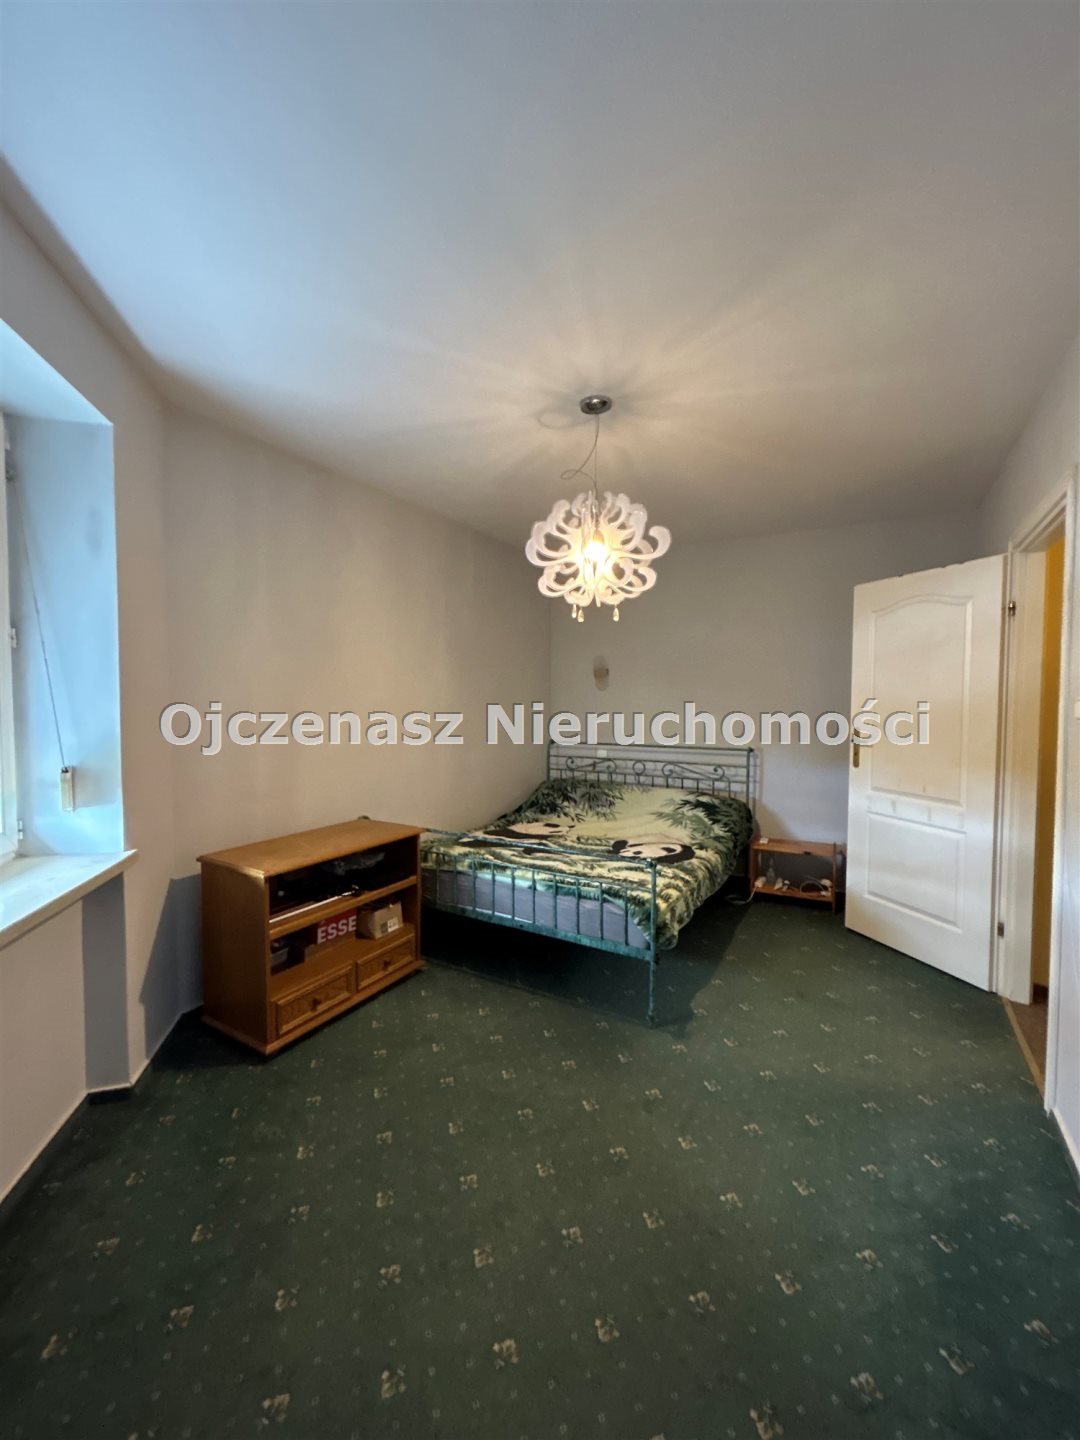 Mieszkanie trzypokojowe na sprzedaż Bydgoszcz, Górzyskowo  89m2 Foto 7